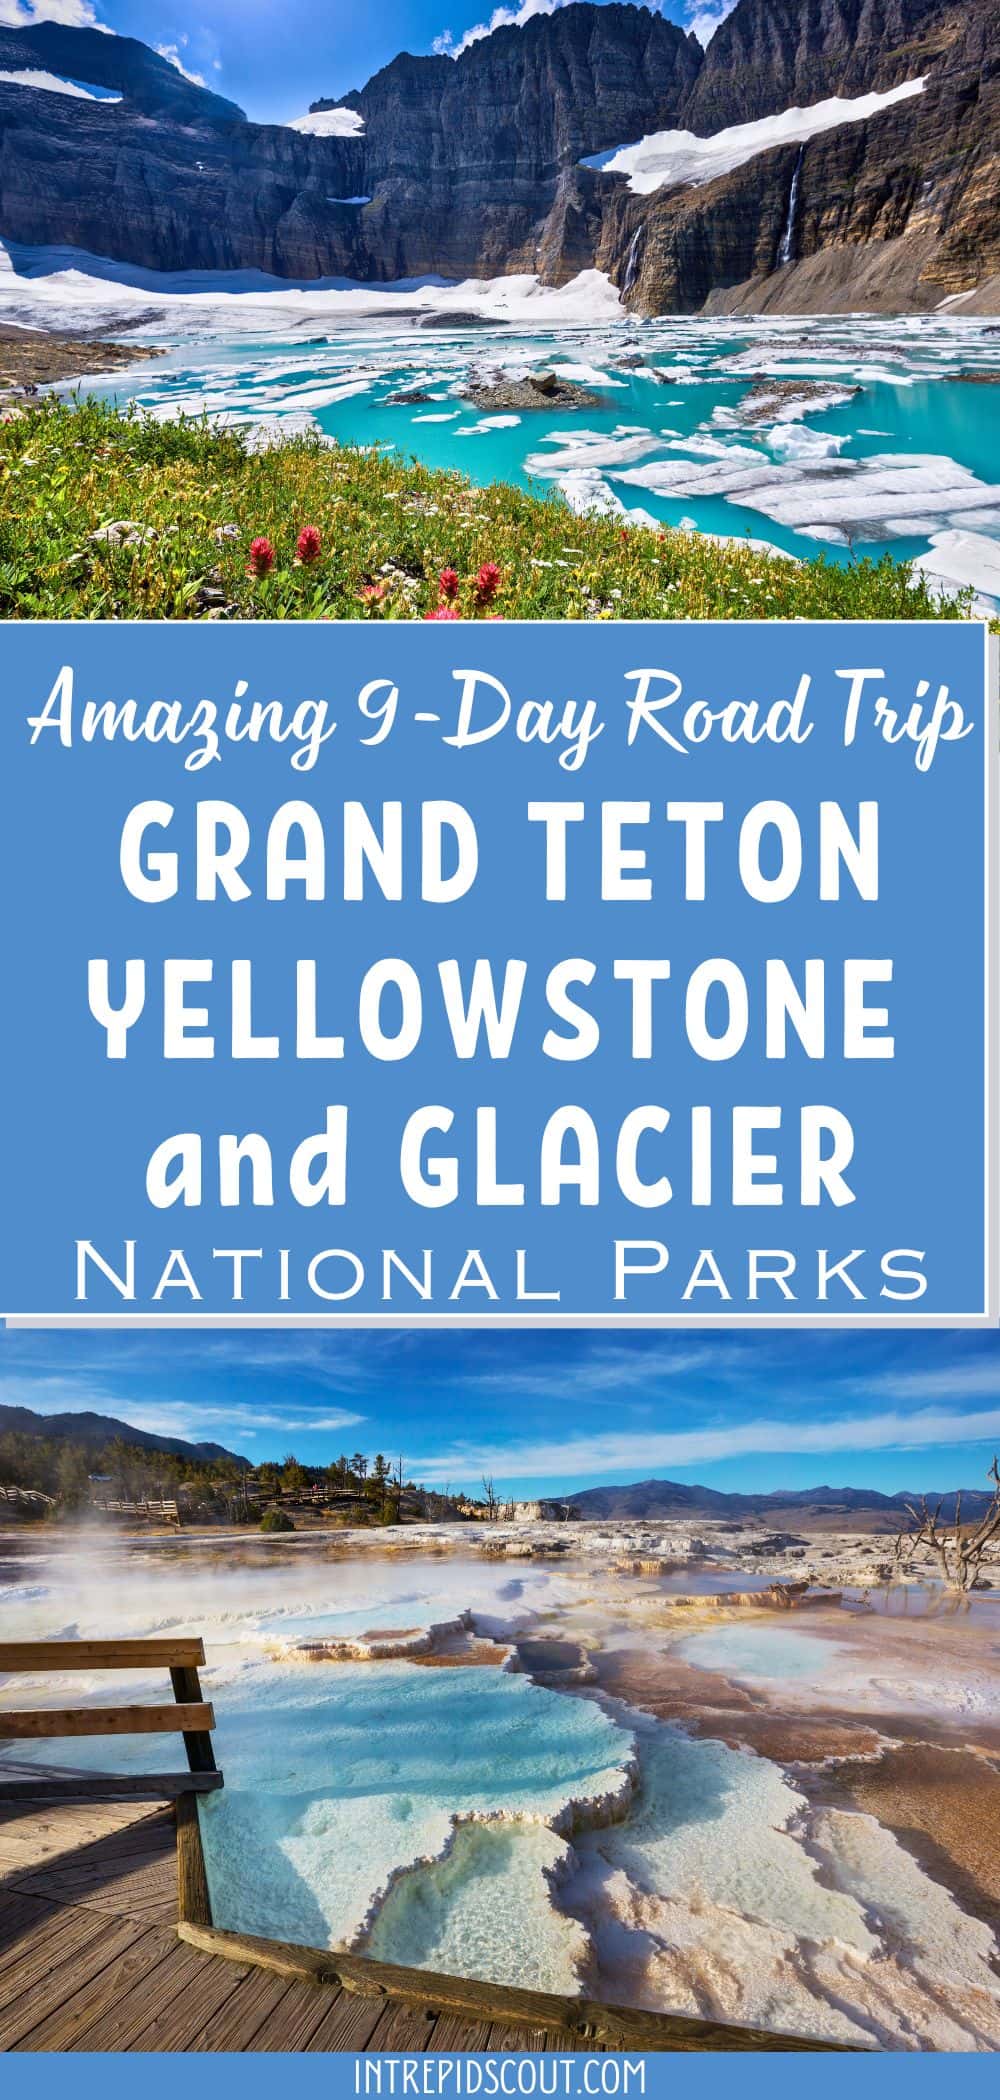 9-Day Grand Teton, Yellowstone, and Glacier Road Trip